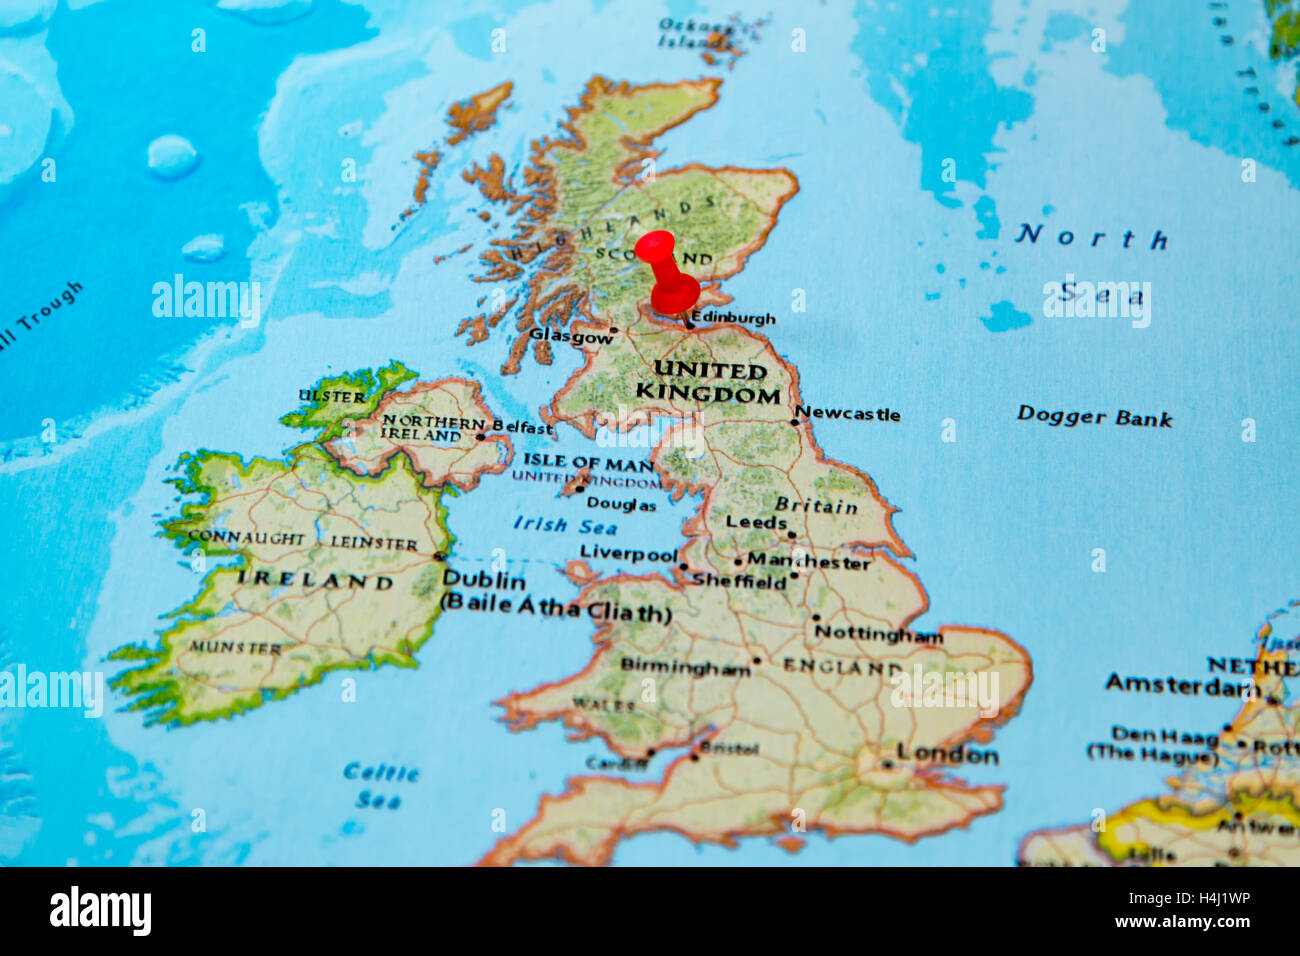 Edimbourg, Ecosse épinglée sur une carte de l'Europe. Banque D'Images